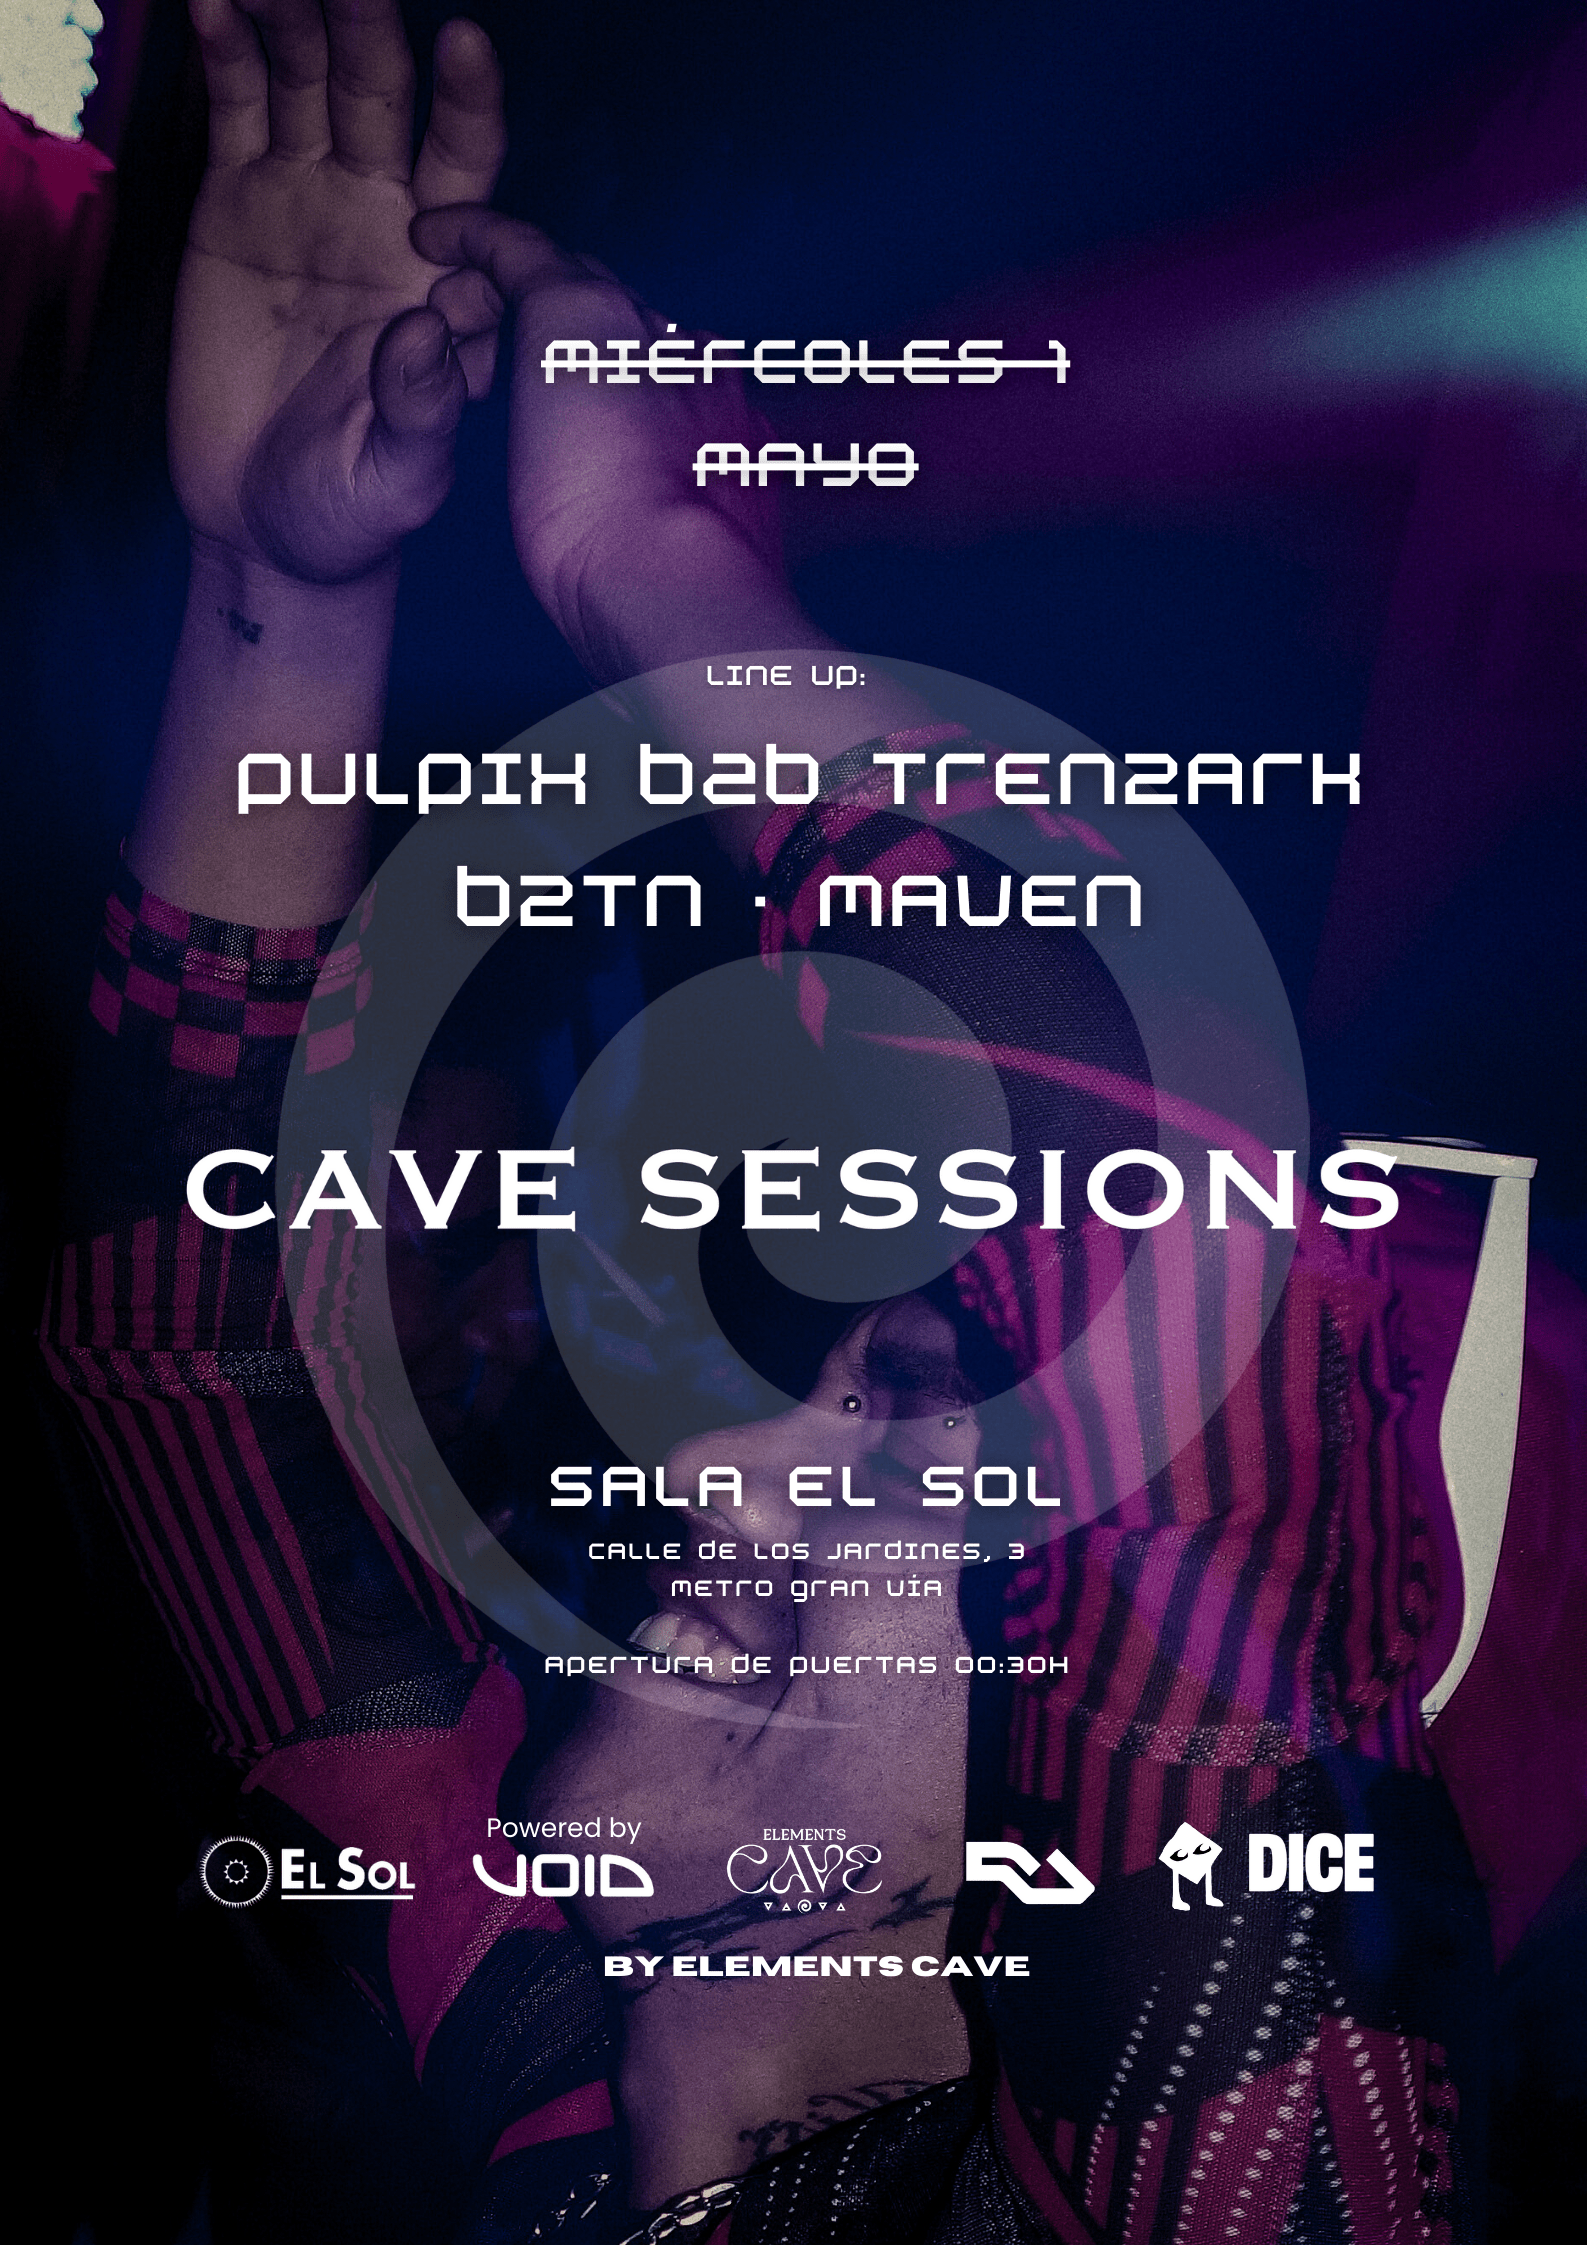 Cave Sessions: Pulpix b2b Trenzark + b2Tn + Maven